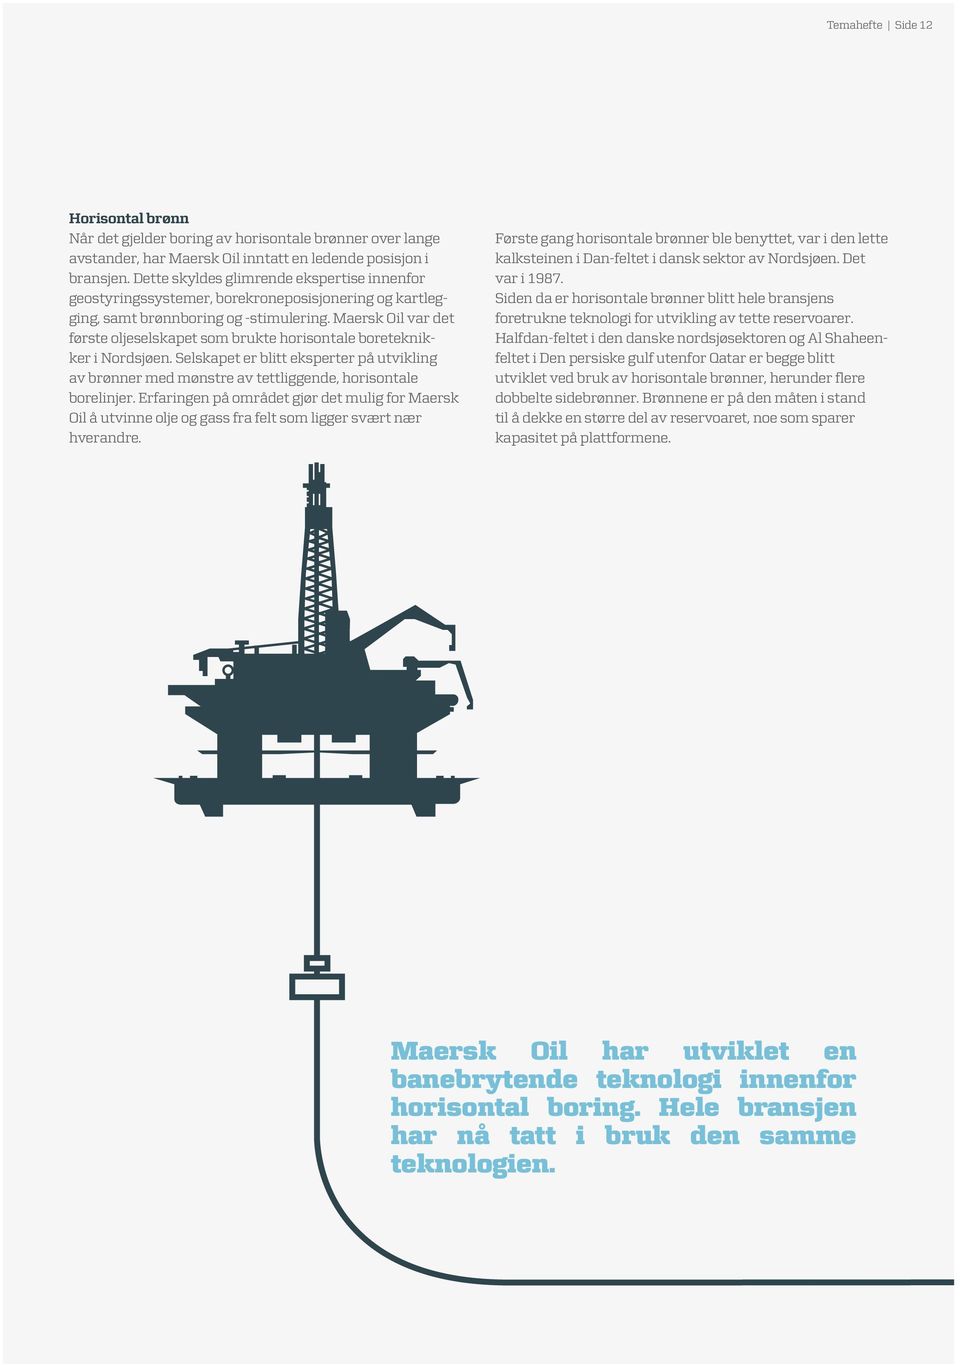 Maersk Oil var det første oljeselskapet som brukte horisontale boreteknikker i Nordsjøen. Selskapet er blitt eksperter på utvikling av brønner med mønstre av tettliggende, horisontale borelinjer.